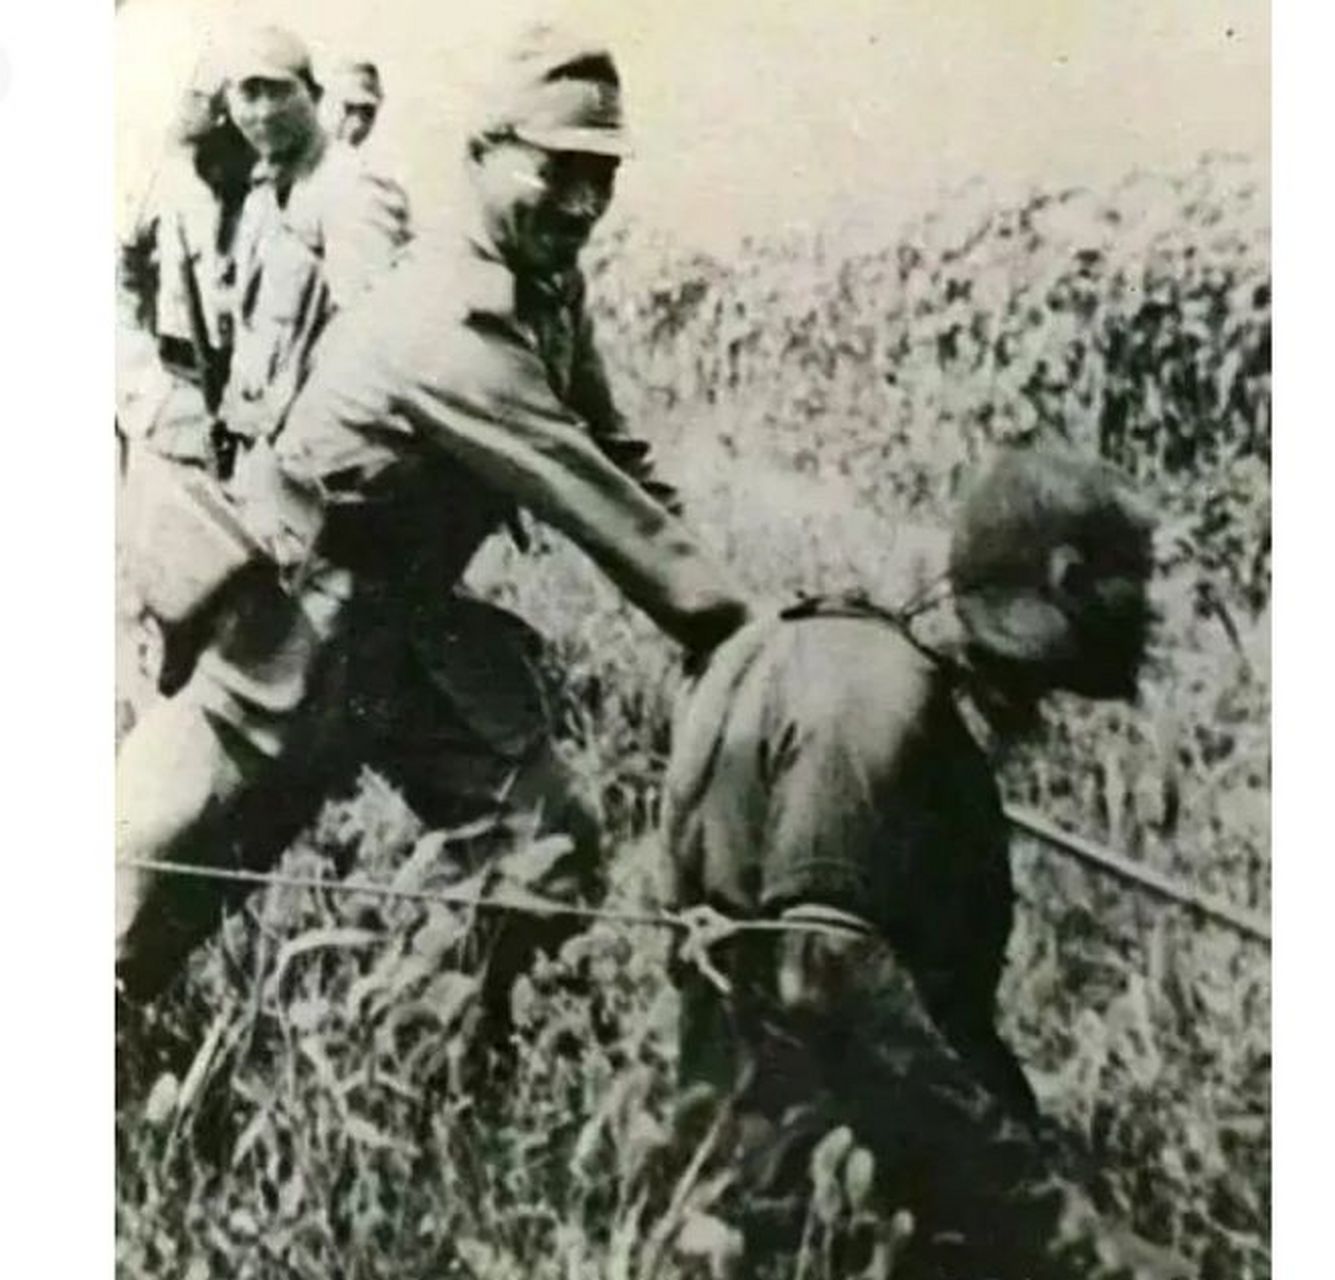 1937年,南京大屠杀期间,日本军官的残忍行径让人无法忍受